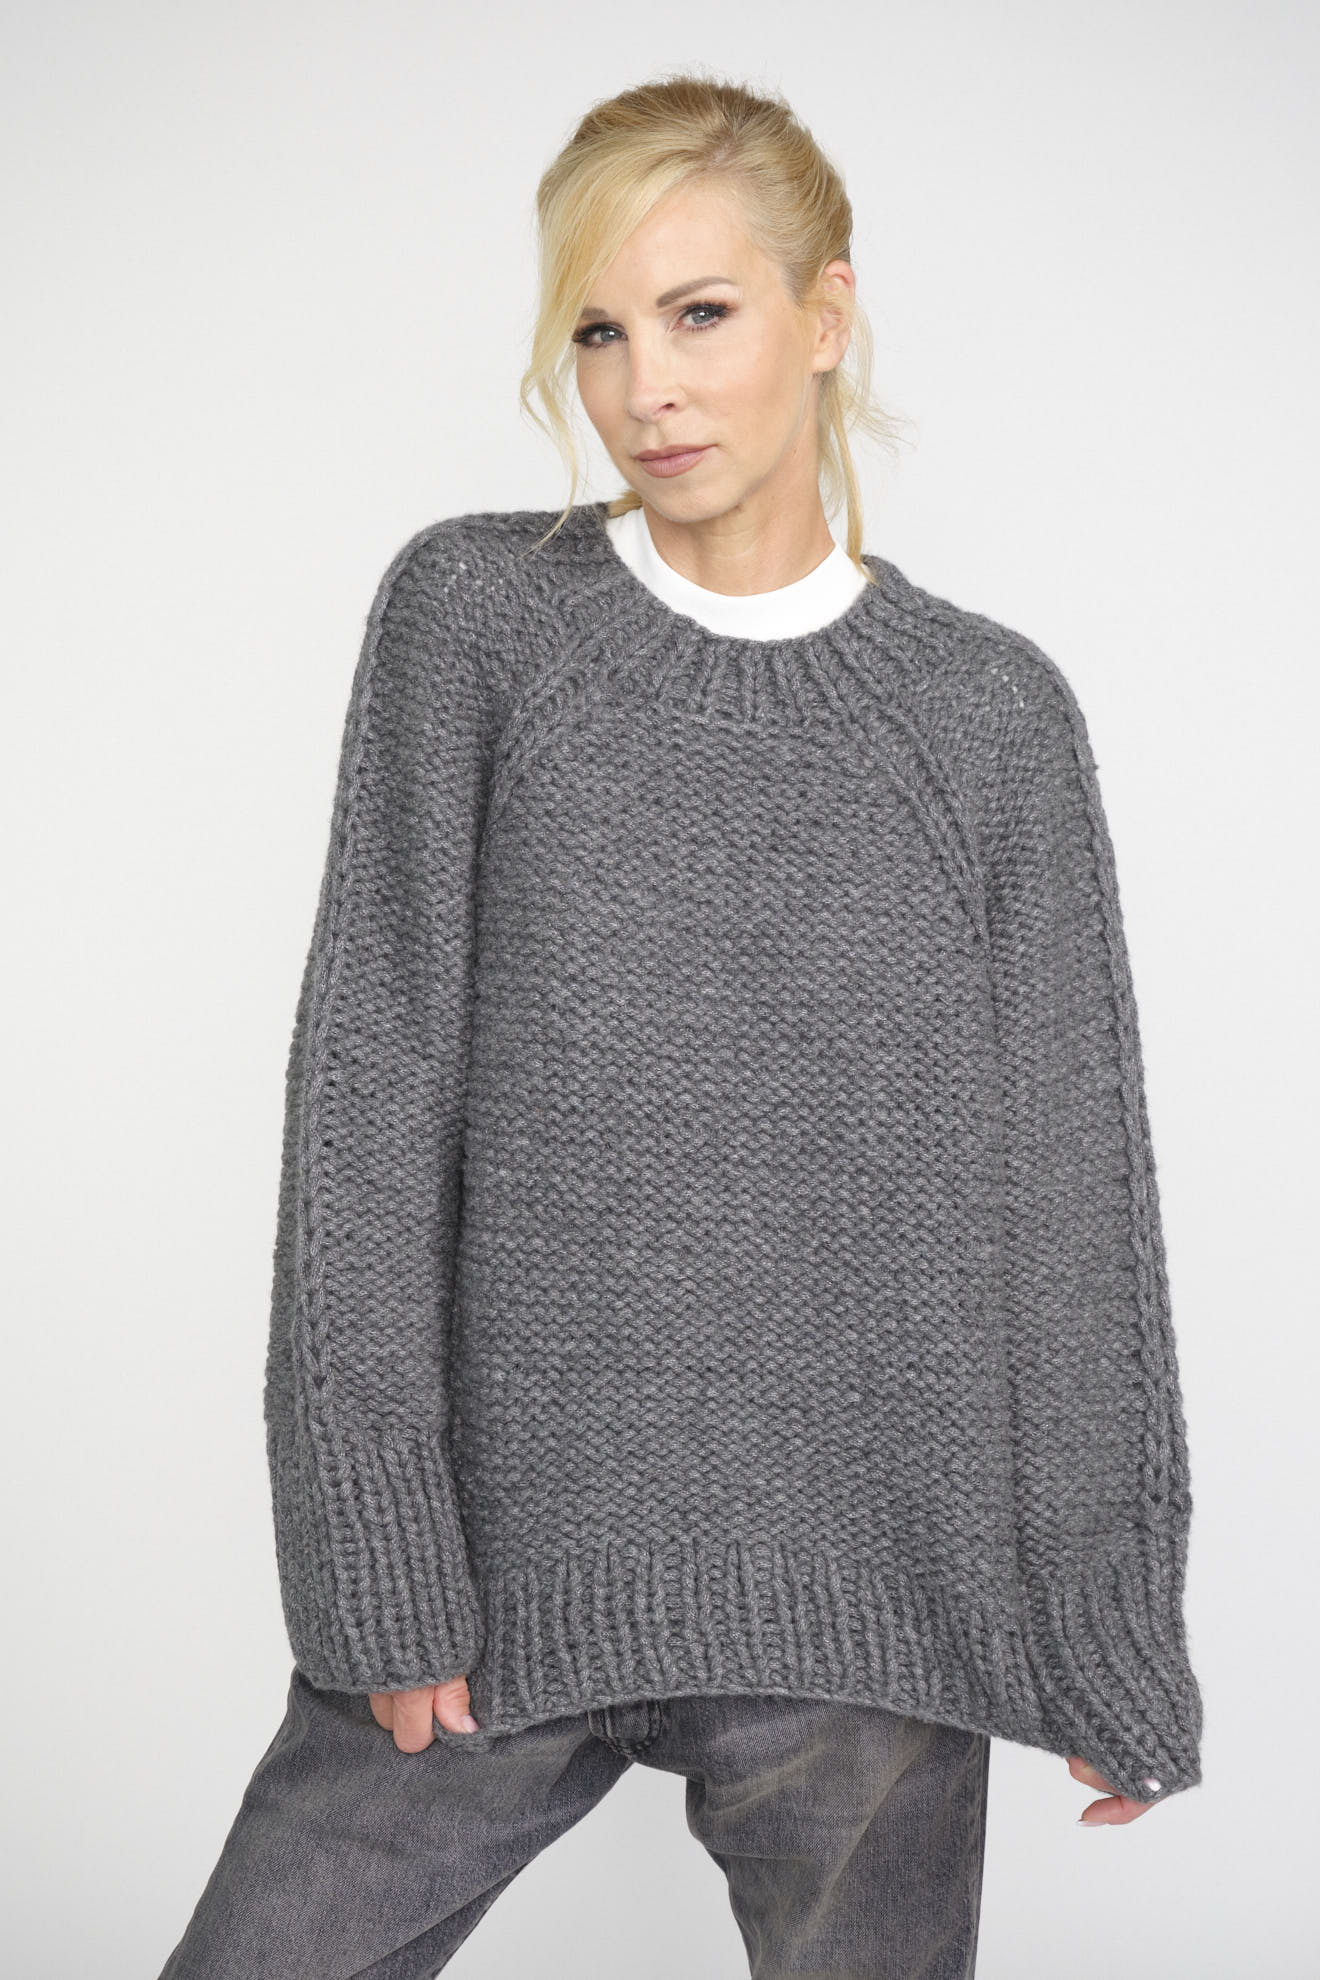 iris von arnim sweater grey plain cashmere